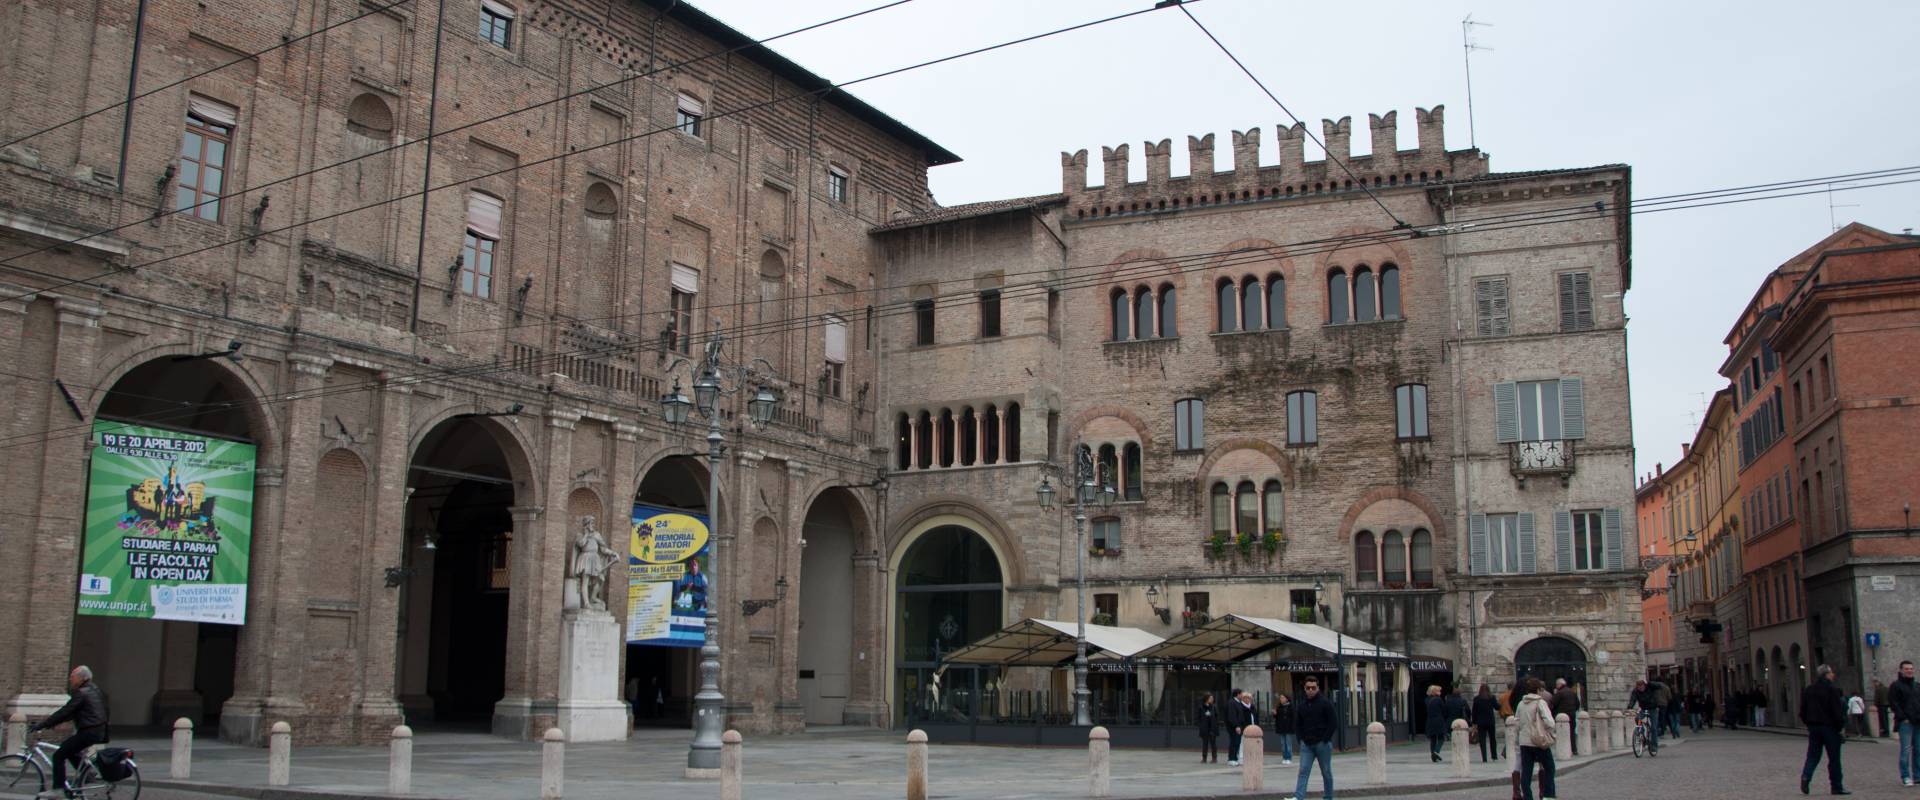 Palazzo del Comune di Parma photo by Fabio Duma